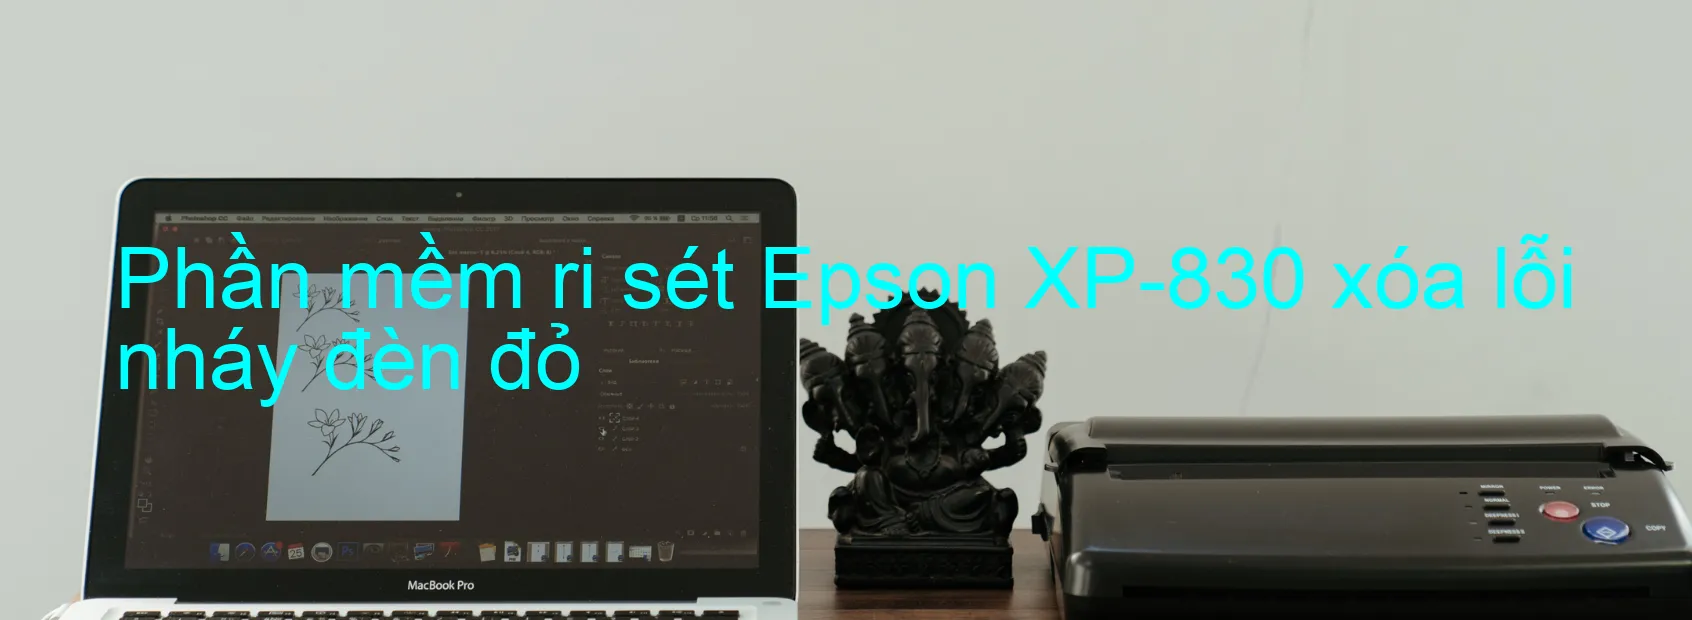 Phần mềm reset Epson XP-830 xóa lỗi nháy đèn đỏ